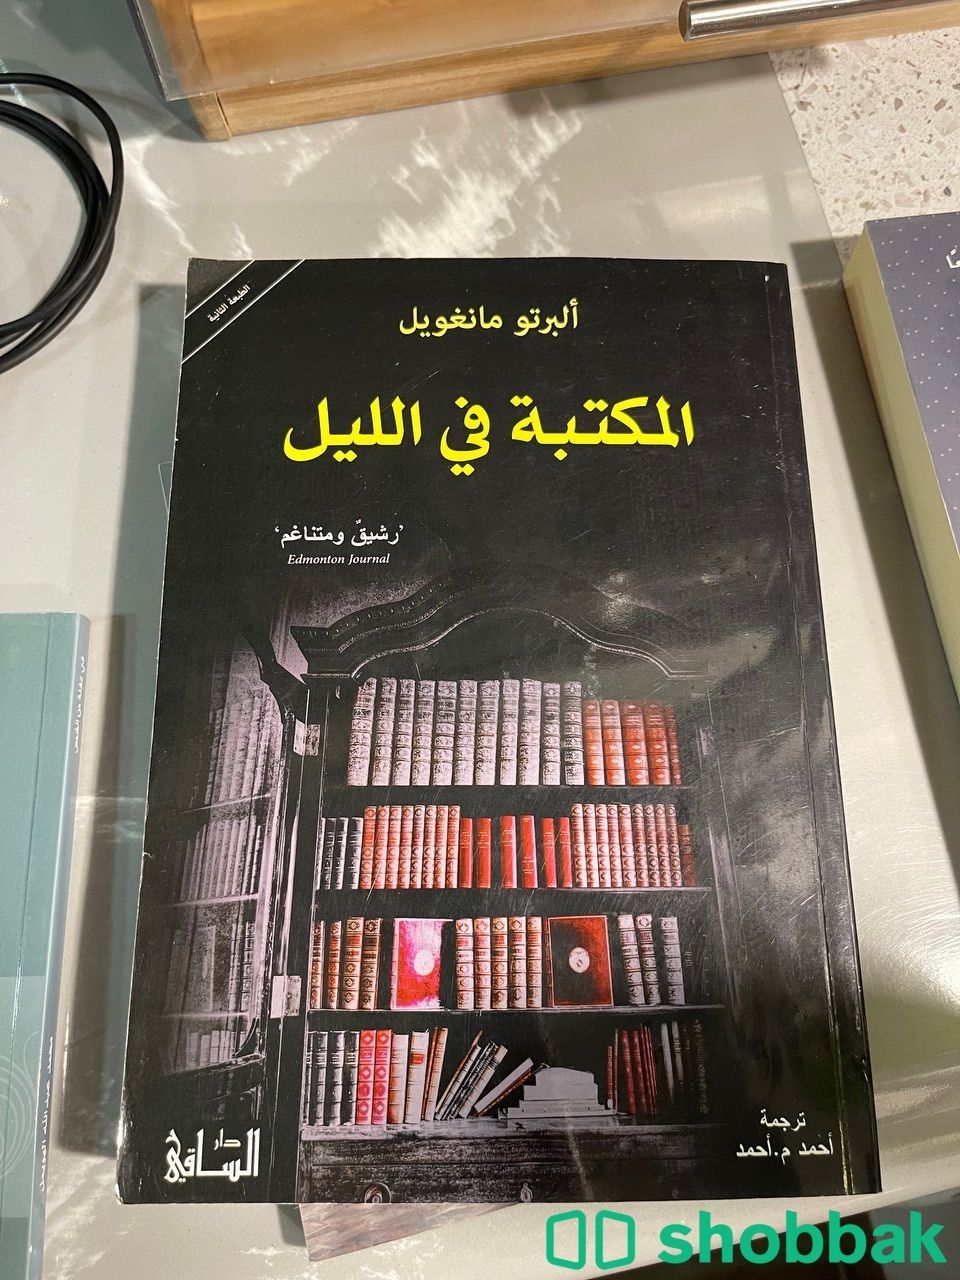 المكتبة في الليل Shobbak Saudi Arabia